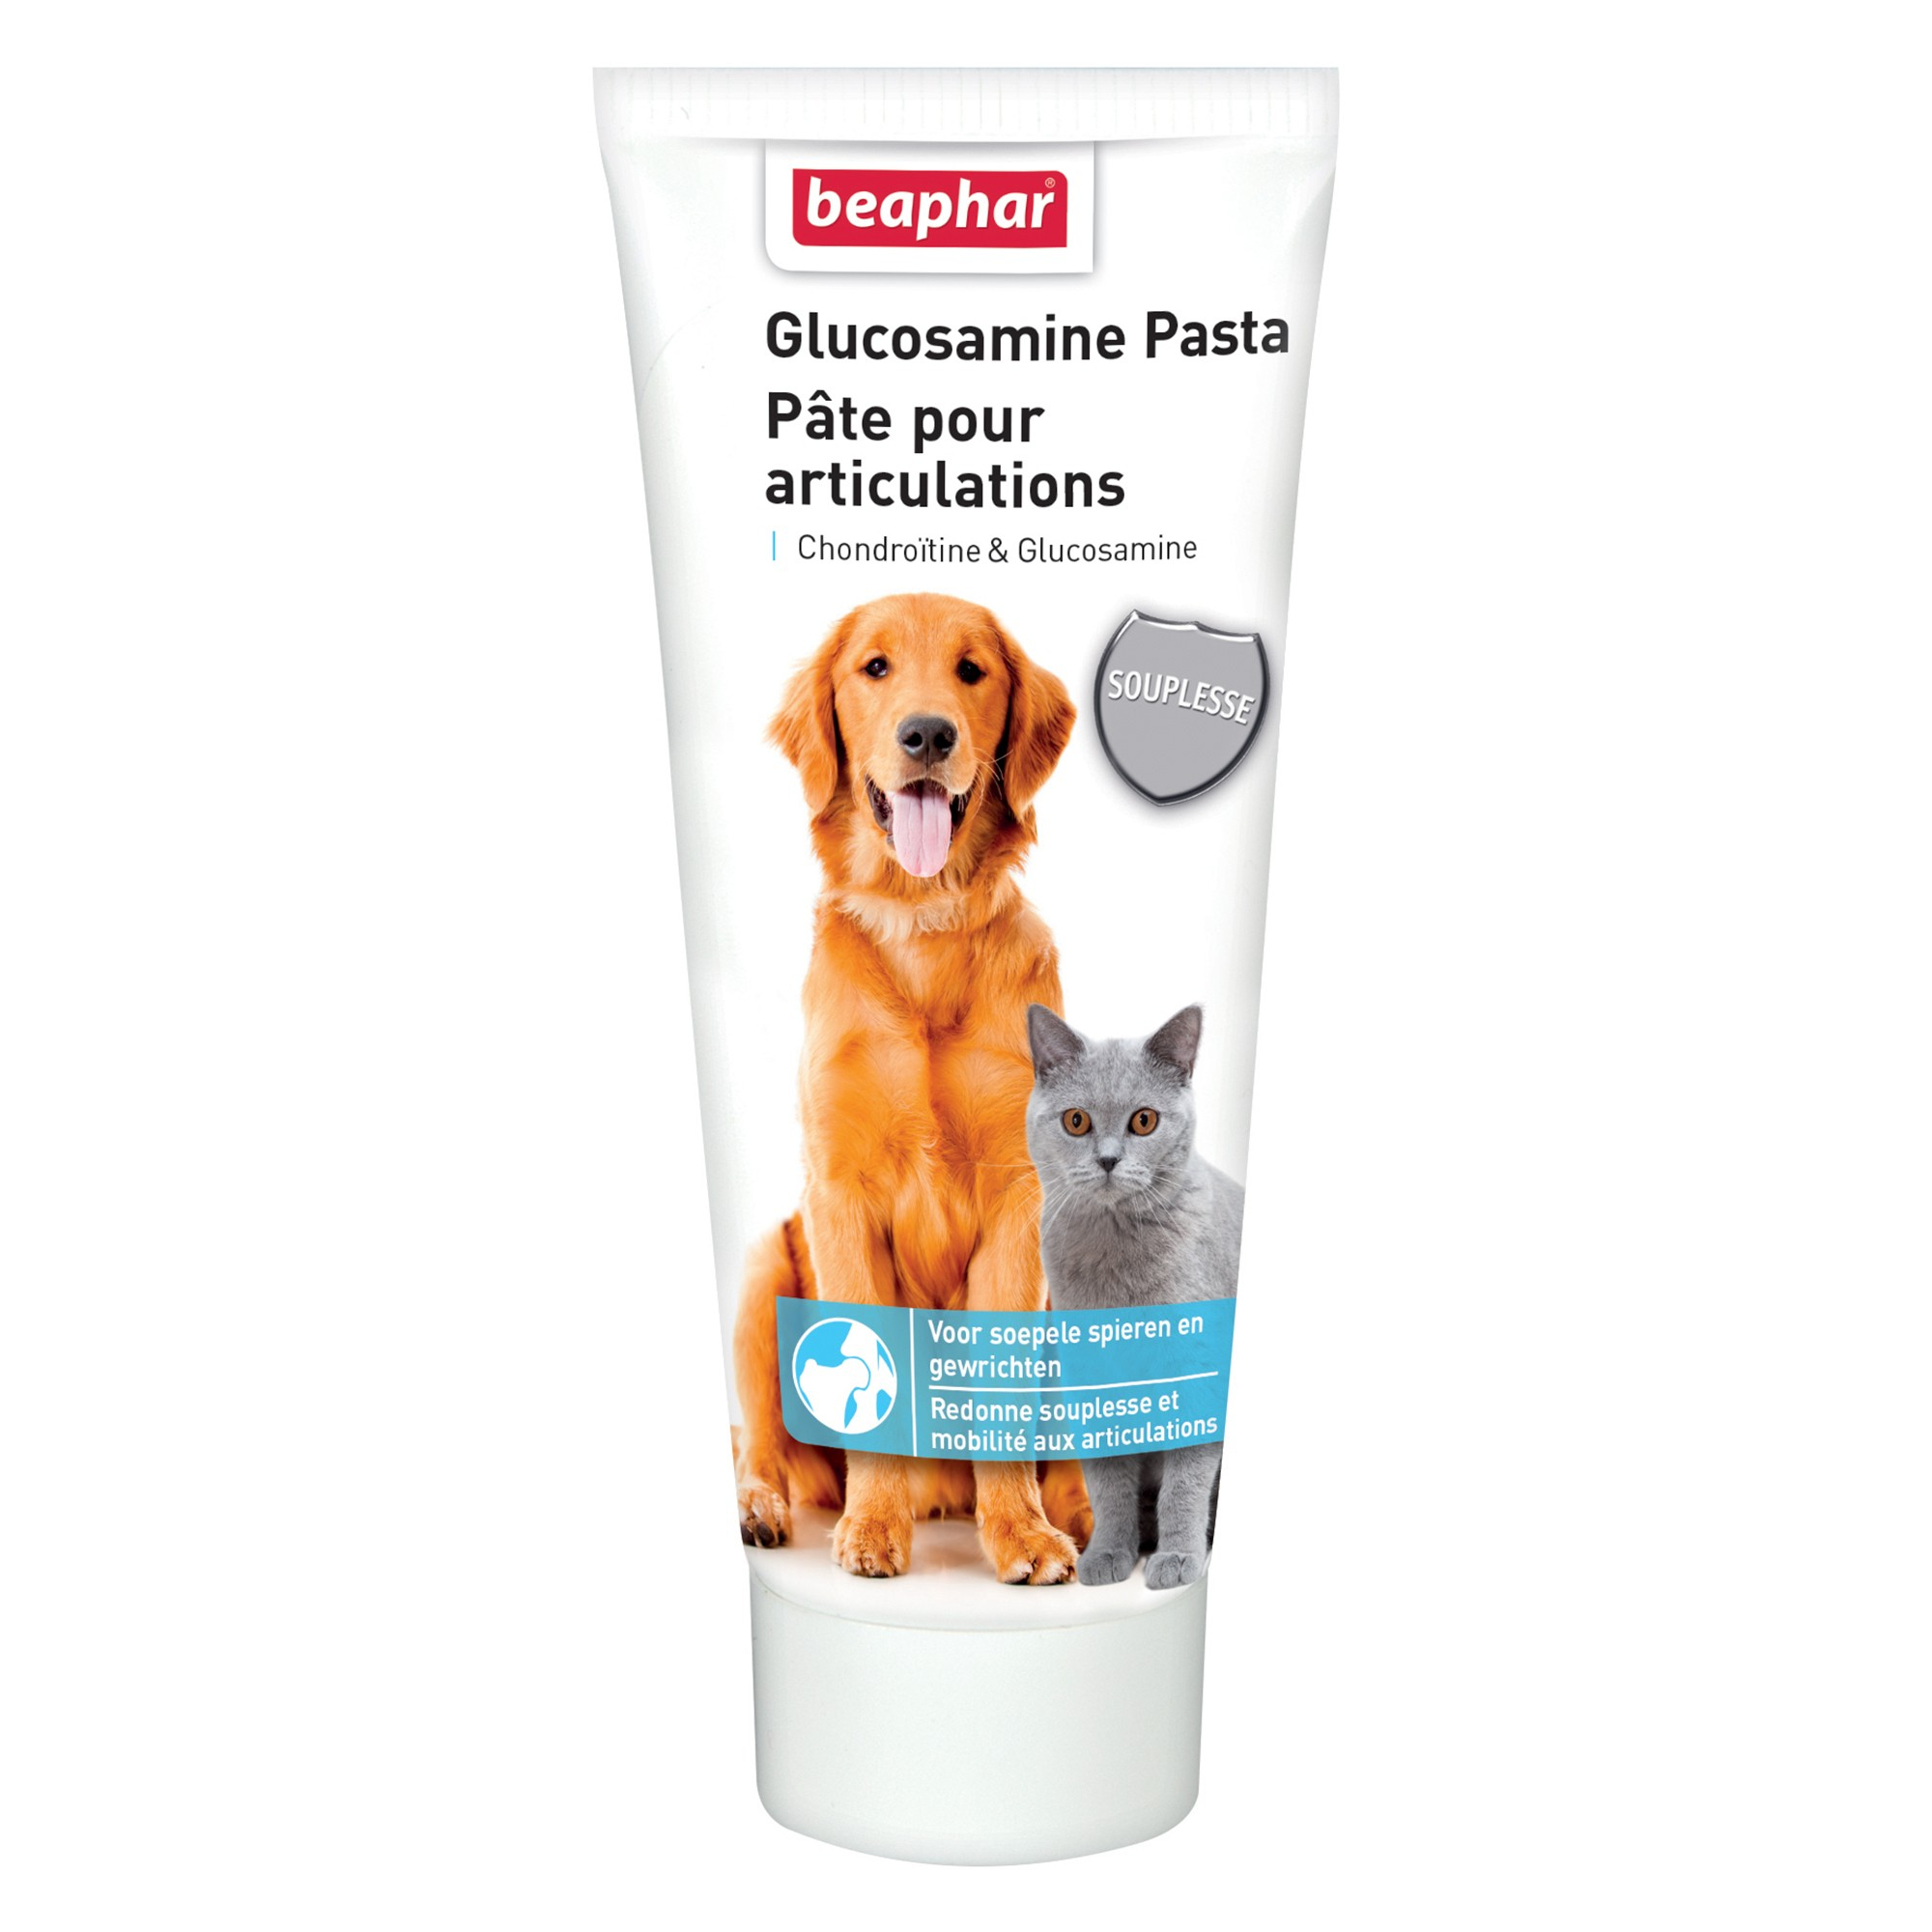 BEAPHAR - Pasta alla Glucosamina per articolazioni del cane